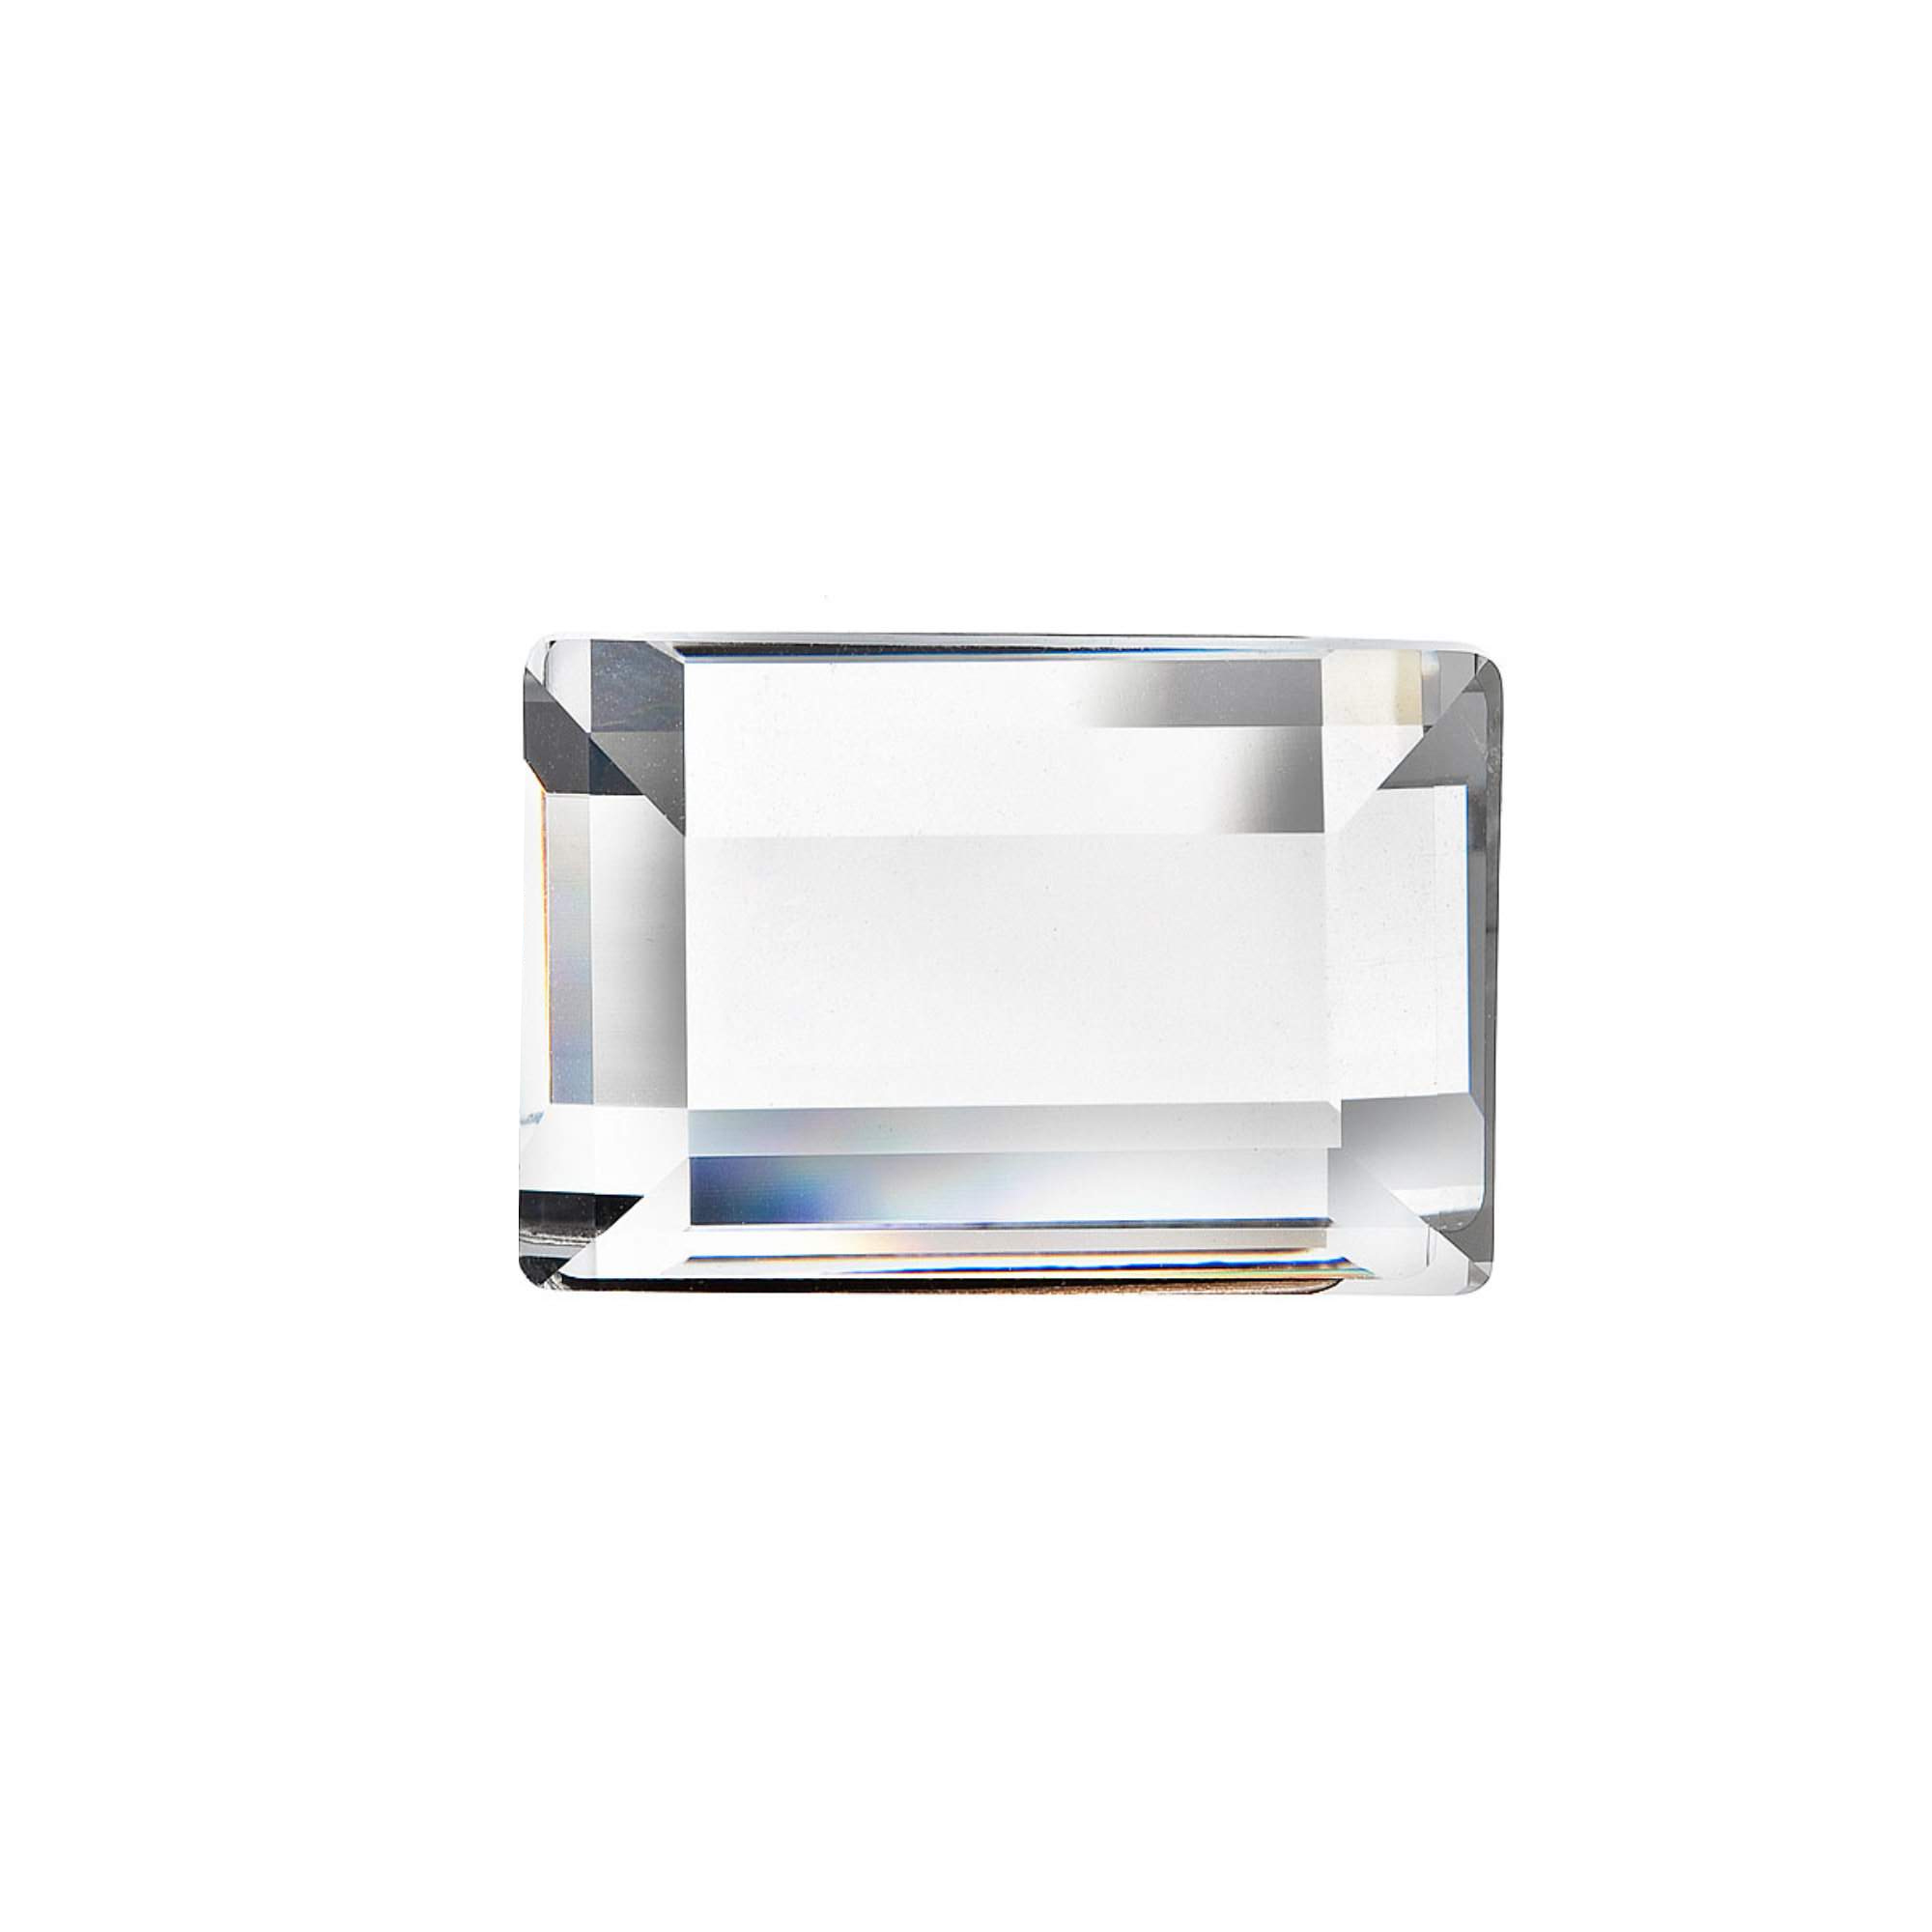 Evolution Group Brož bižuterie se Swarovski krystalem bílý obdelník 78011.3 crystal